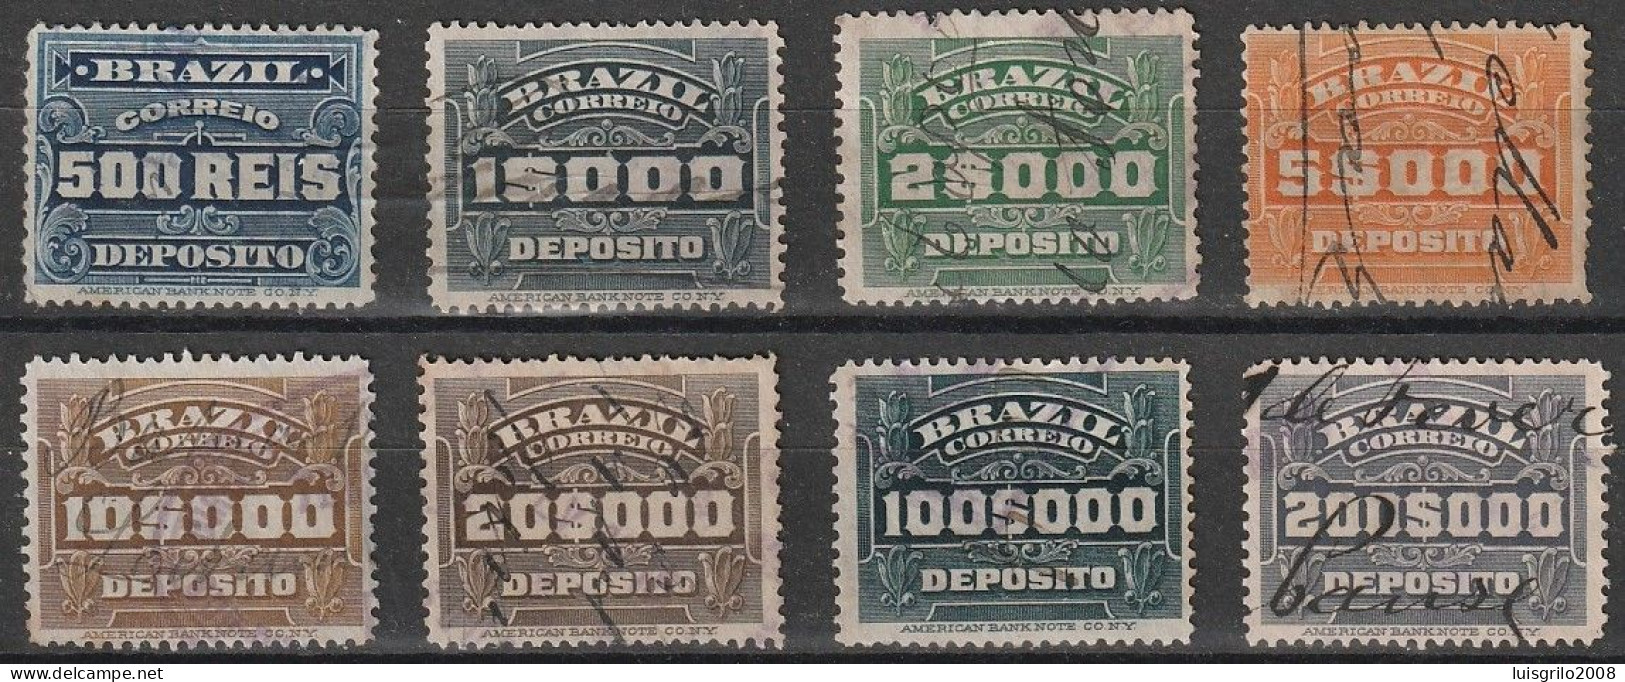 Revenue/ Fiscaux, Brazil 1920 - Depósito, Receita Fiscal -|- 500 Rs, 1$000, 2$000, 5$000, 10$000, 20$000, 100$000, 200$0 - Timbres-taxe